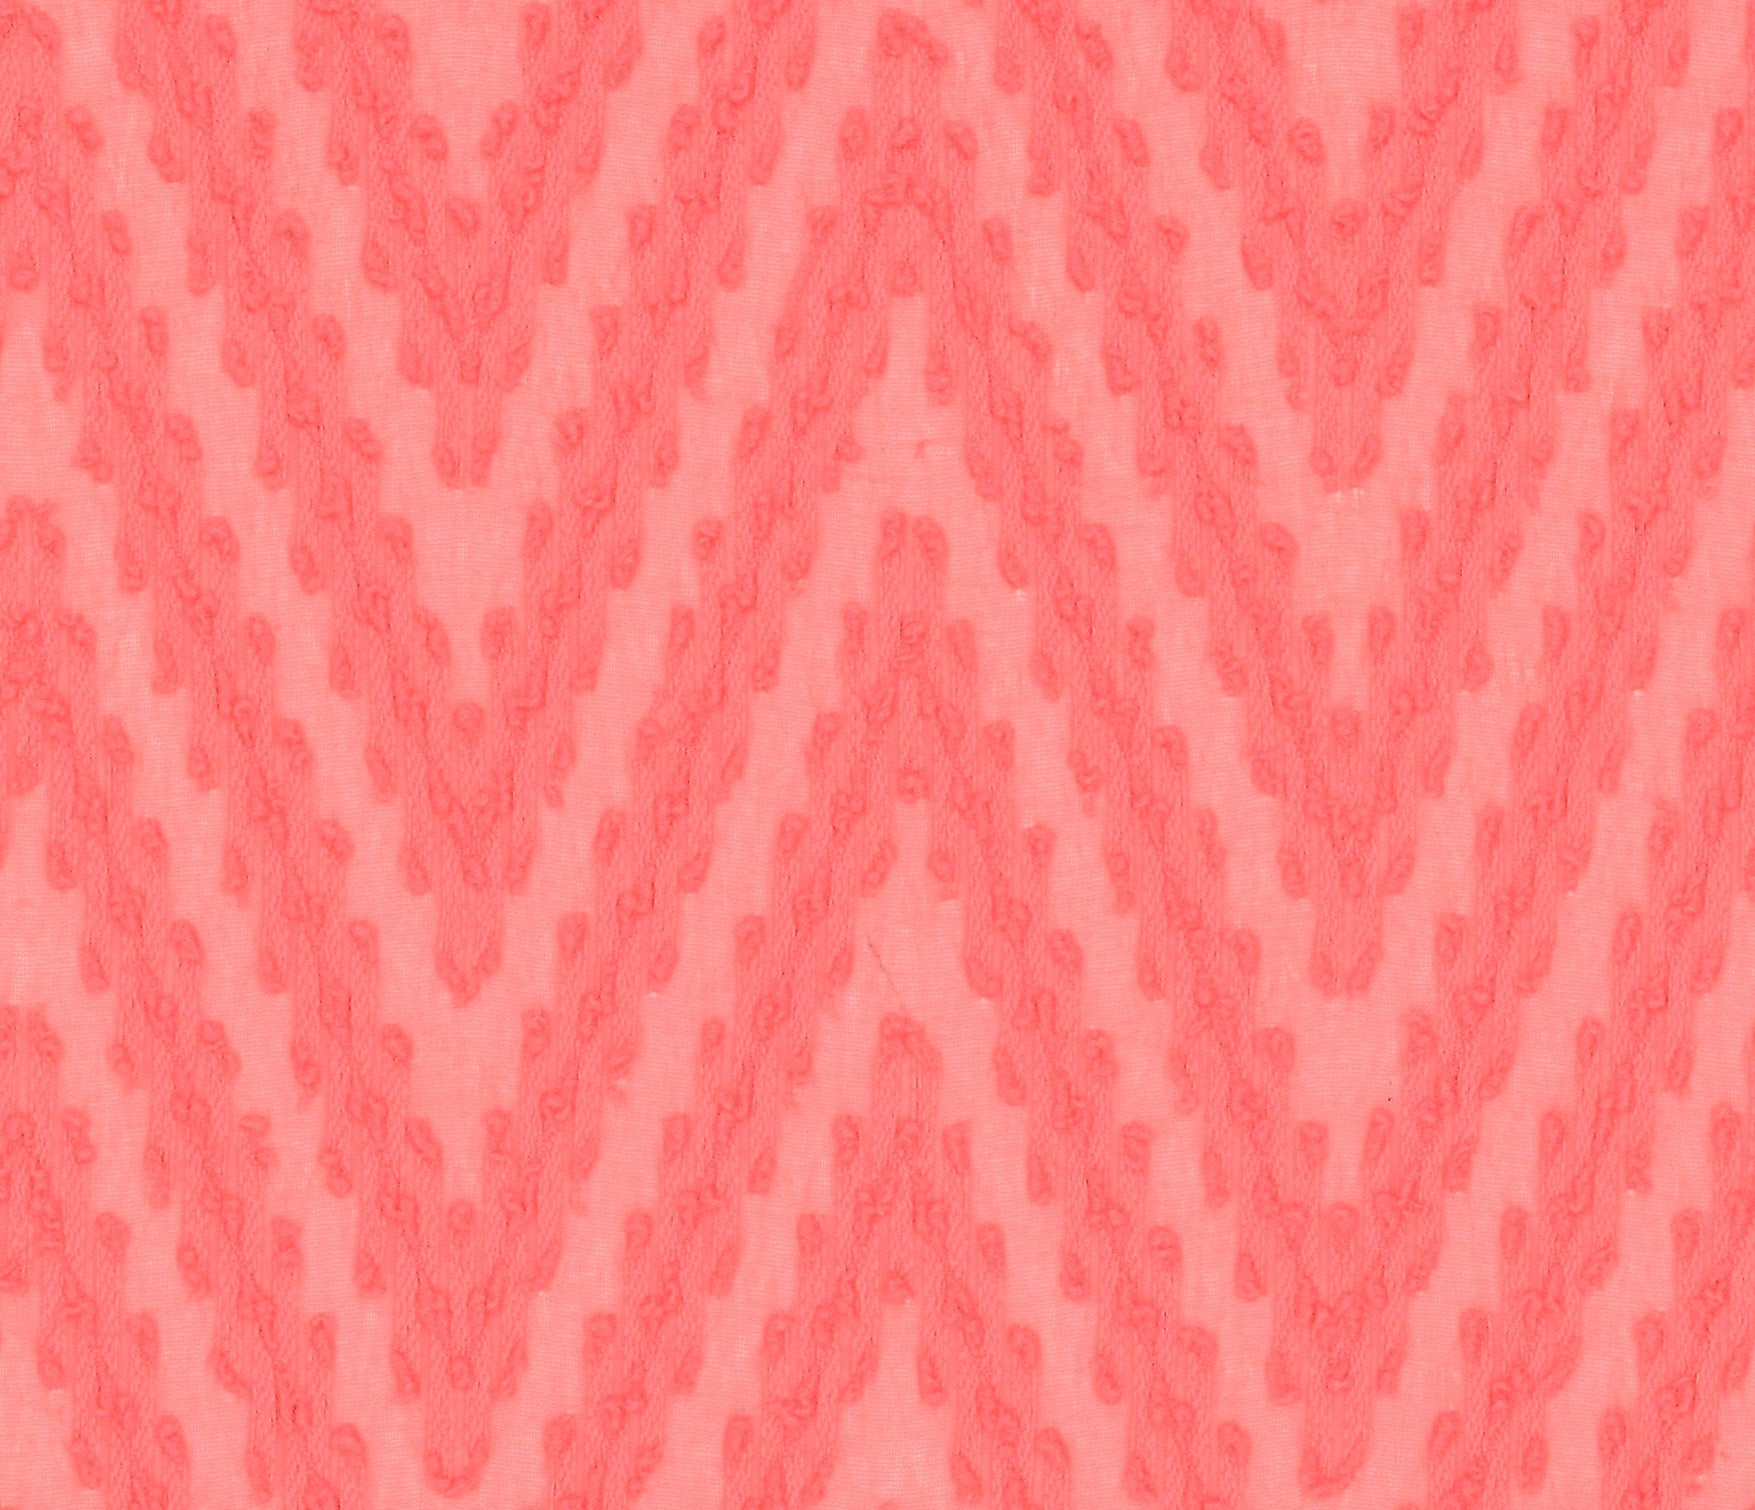 9958-03 Coral Red Polyester Chiffon Winding Pattern Jacquard Plain Dyed 100% 110g/yd 58&quot; chiffon jacquard plain dyed polyester red woven Chiffon, Jacquard - knit fabric - woven fabric - fabric company - fabric wholesale - fabric b2b - fabric factory - high quality fabric - hong kong fabric - fabric hk - acetate fabric - cotton fabric - linen fabric - metallic fabric - nylon fabric - polyester fabric - spandex fabric - chun wing hing - cwh hk - fabric worldwide ship - 針織布 - 梳織布 - 布料公司- 布料批發 - 香港布料 - 秦榮興